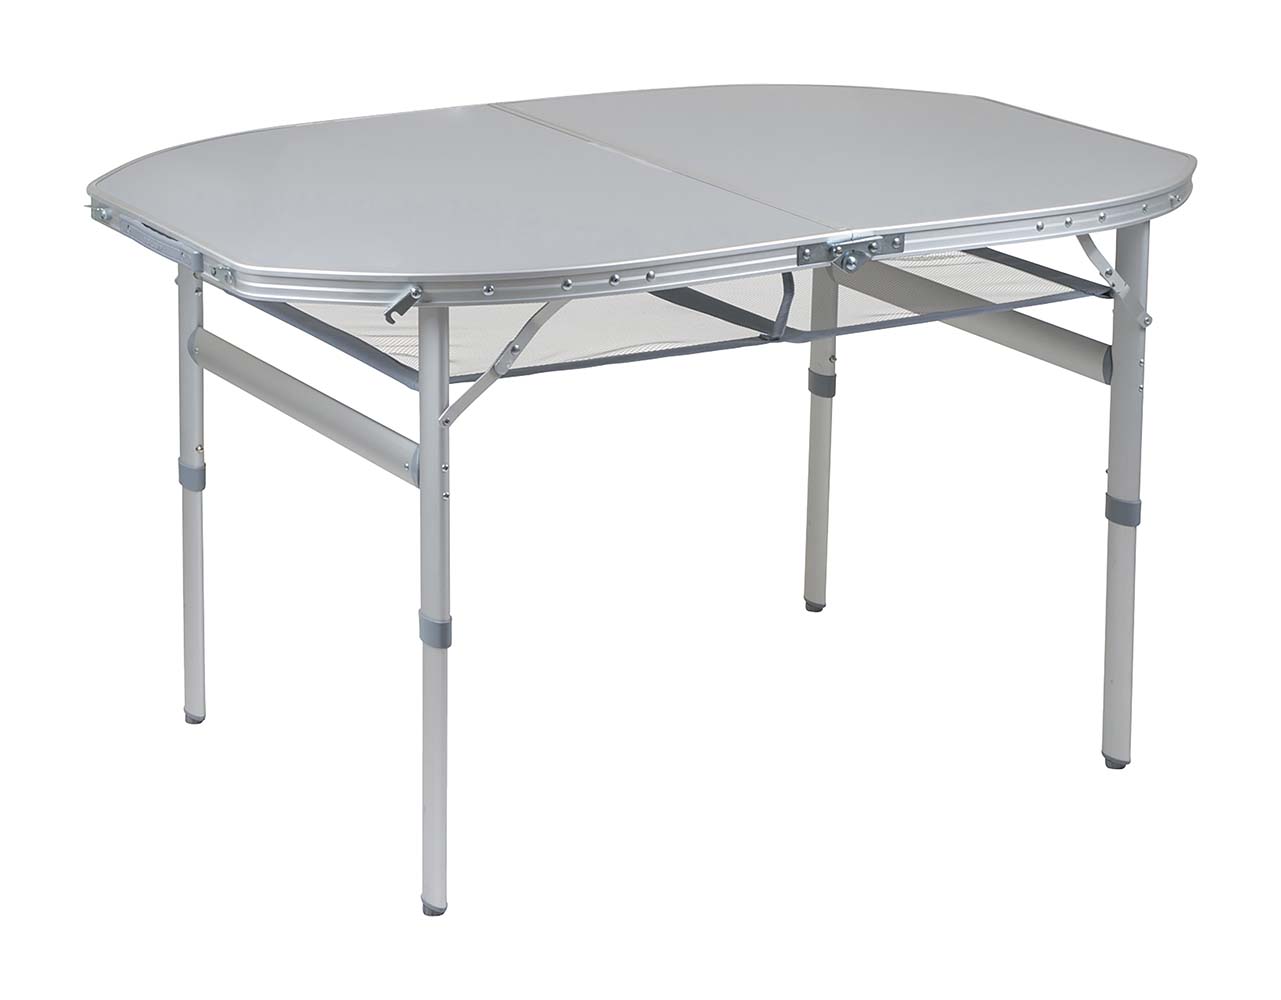 1404420 Een zeer stabiele ovalen campingtafel met een watervast en hittebestendig tafelblad. Deze tafel heeft verstelbare poten, stelschroeven voor extra fijnstelling en een deelbaar tafelblad. Hierdoor is de tafel eenvoudig op te vouwen tot koffermodel. Gemaakt van lichtgewicht aluminium met een watervast en hittebestendig tafelblad. Onder het tafelblad is een net bevestigd om spullen op te bergen. Ingeklapt (lxbxh): 80x60x7 centimeter.